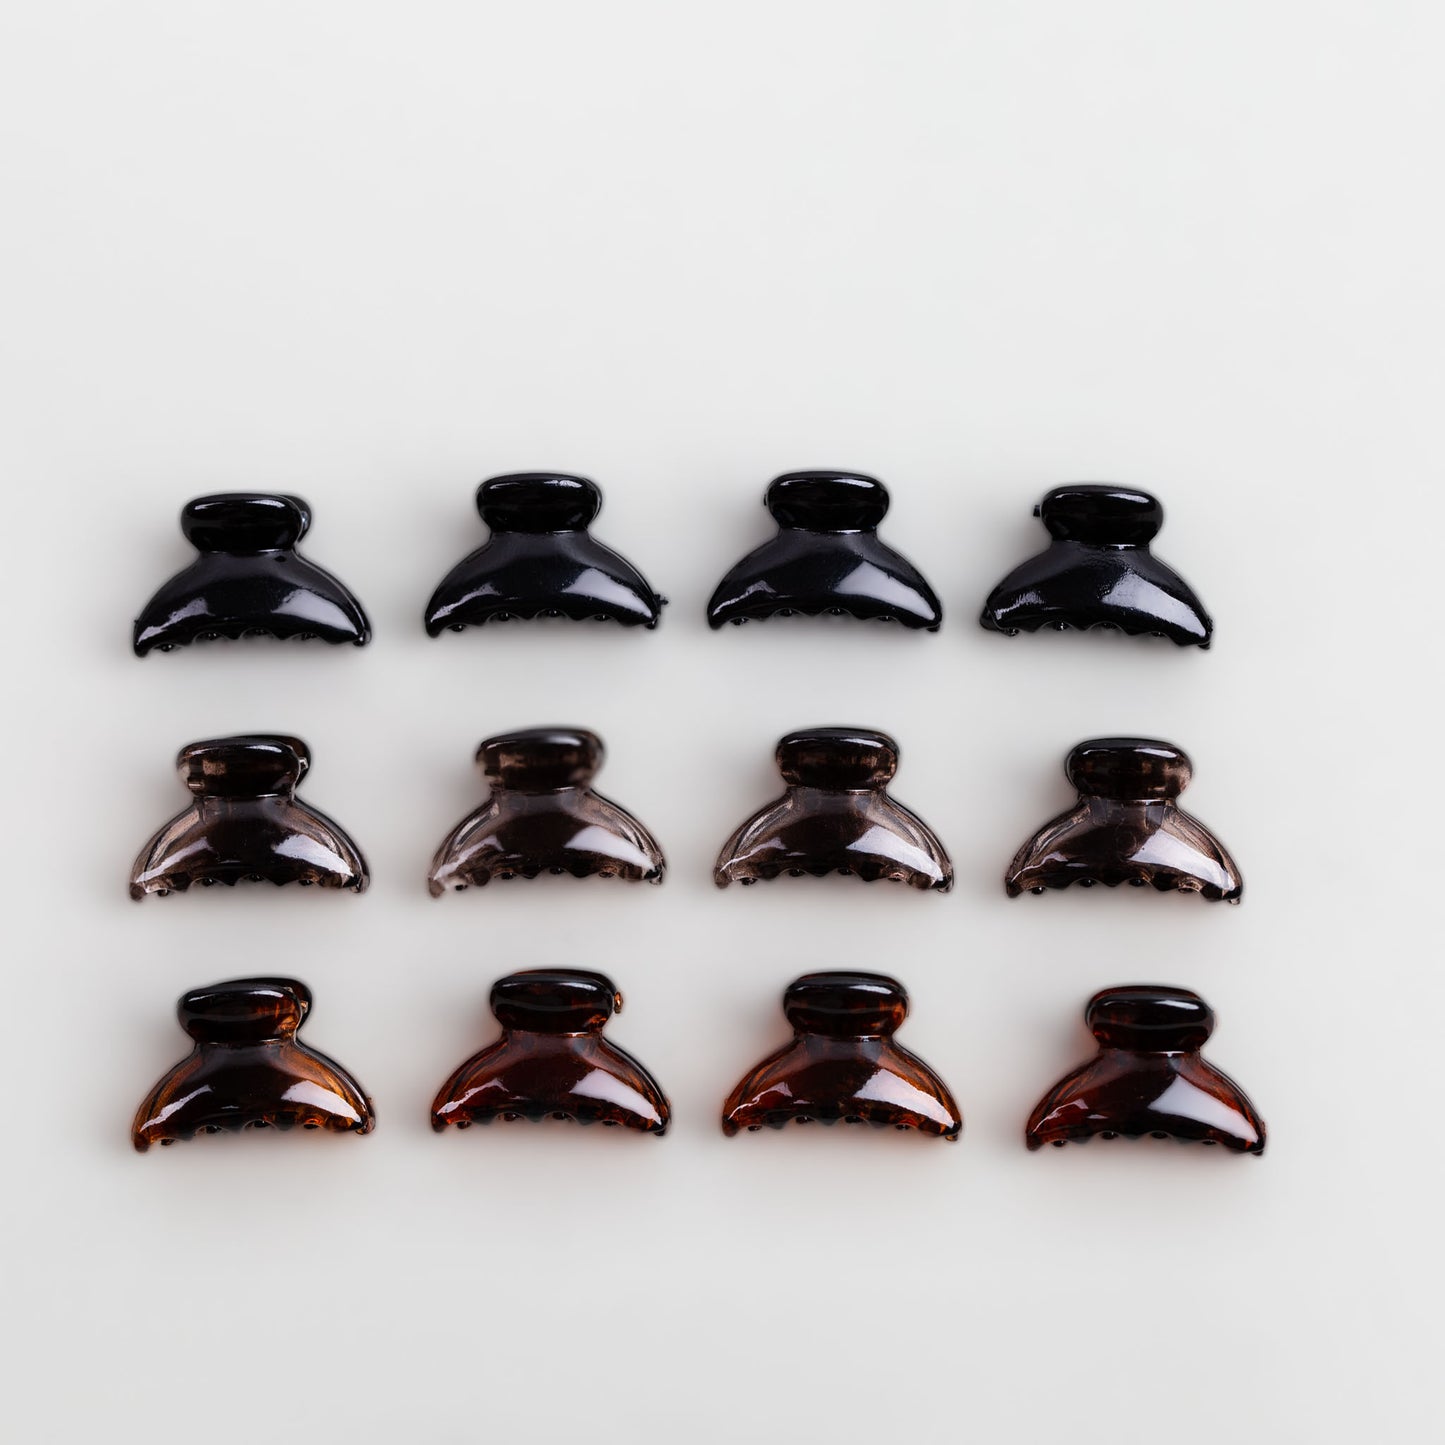 Clame de păr extra mici în formă de semilună cu textură lucioasă, set 12 buc - Maro, Negru